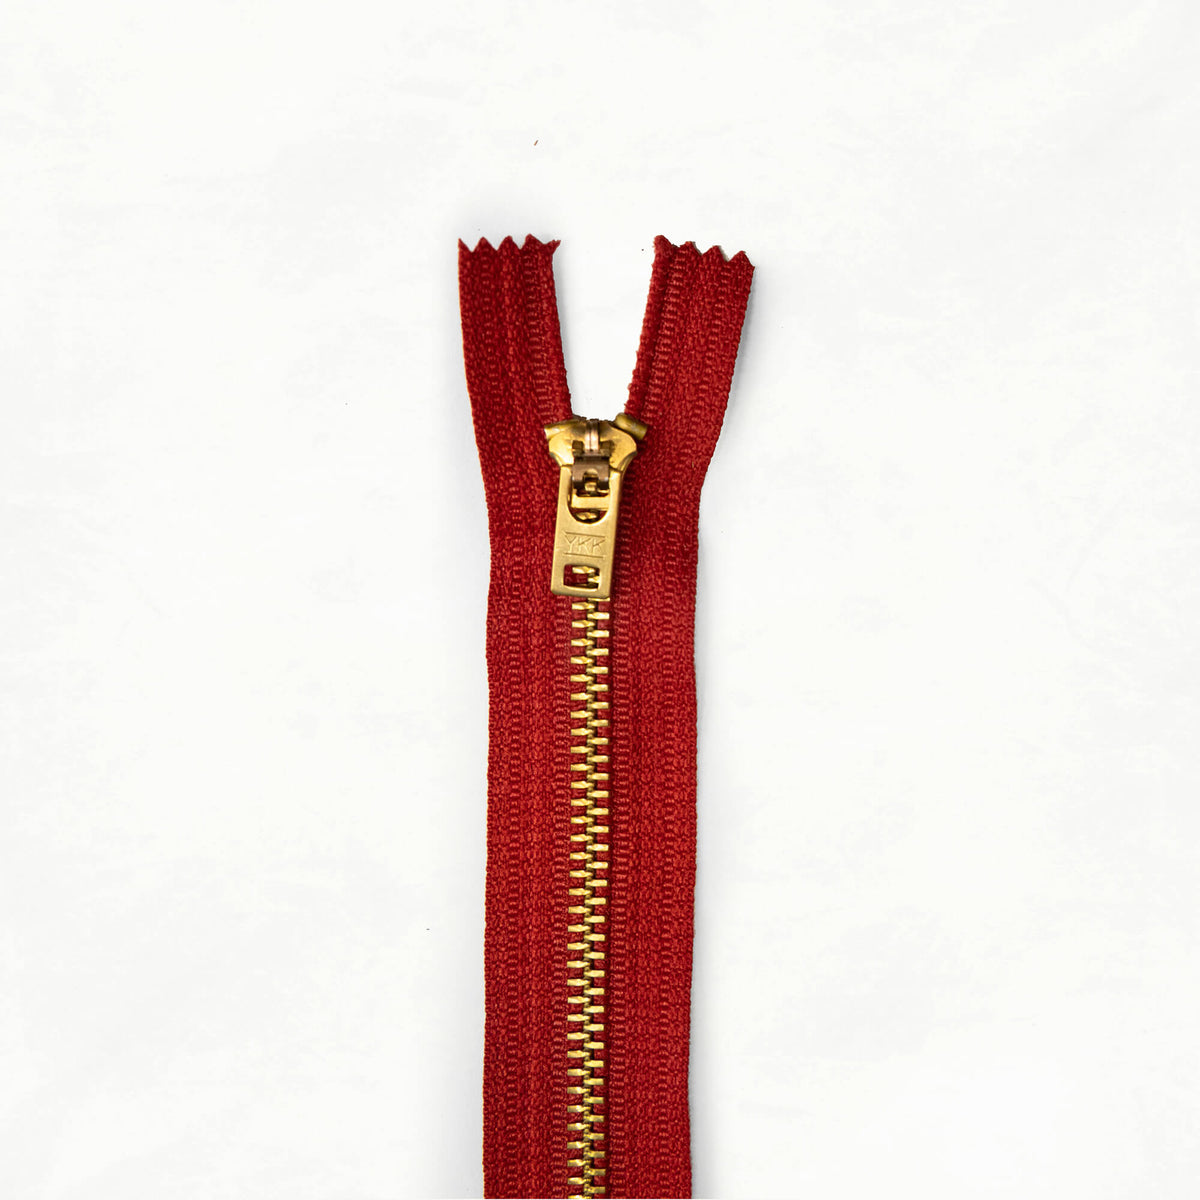 7" Brass Zippers - Red (Deadstock)